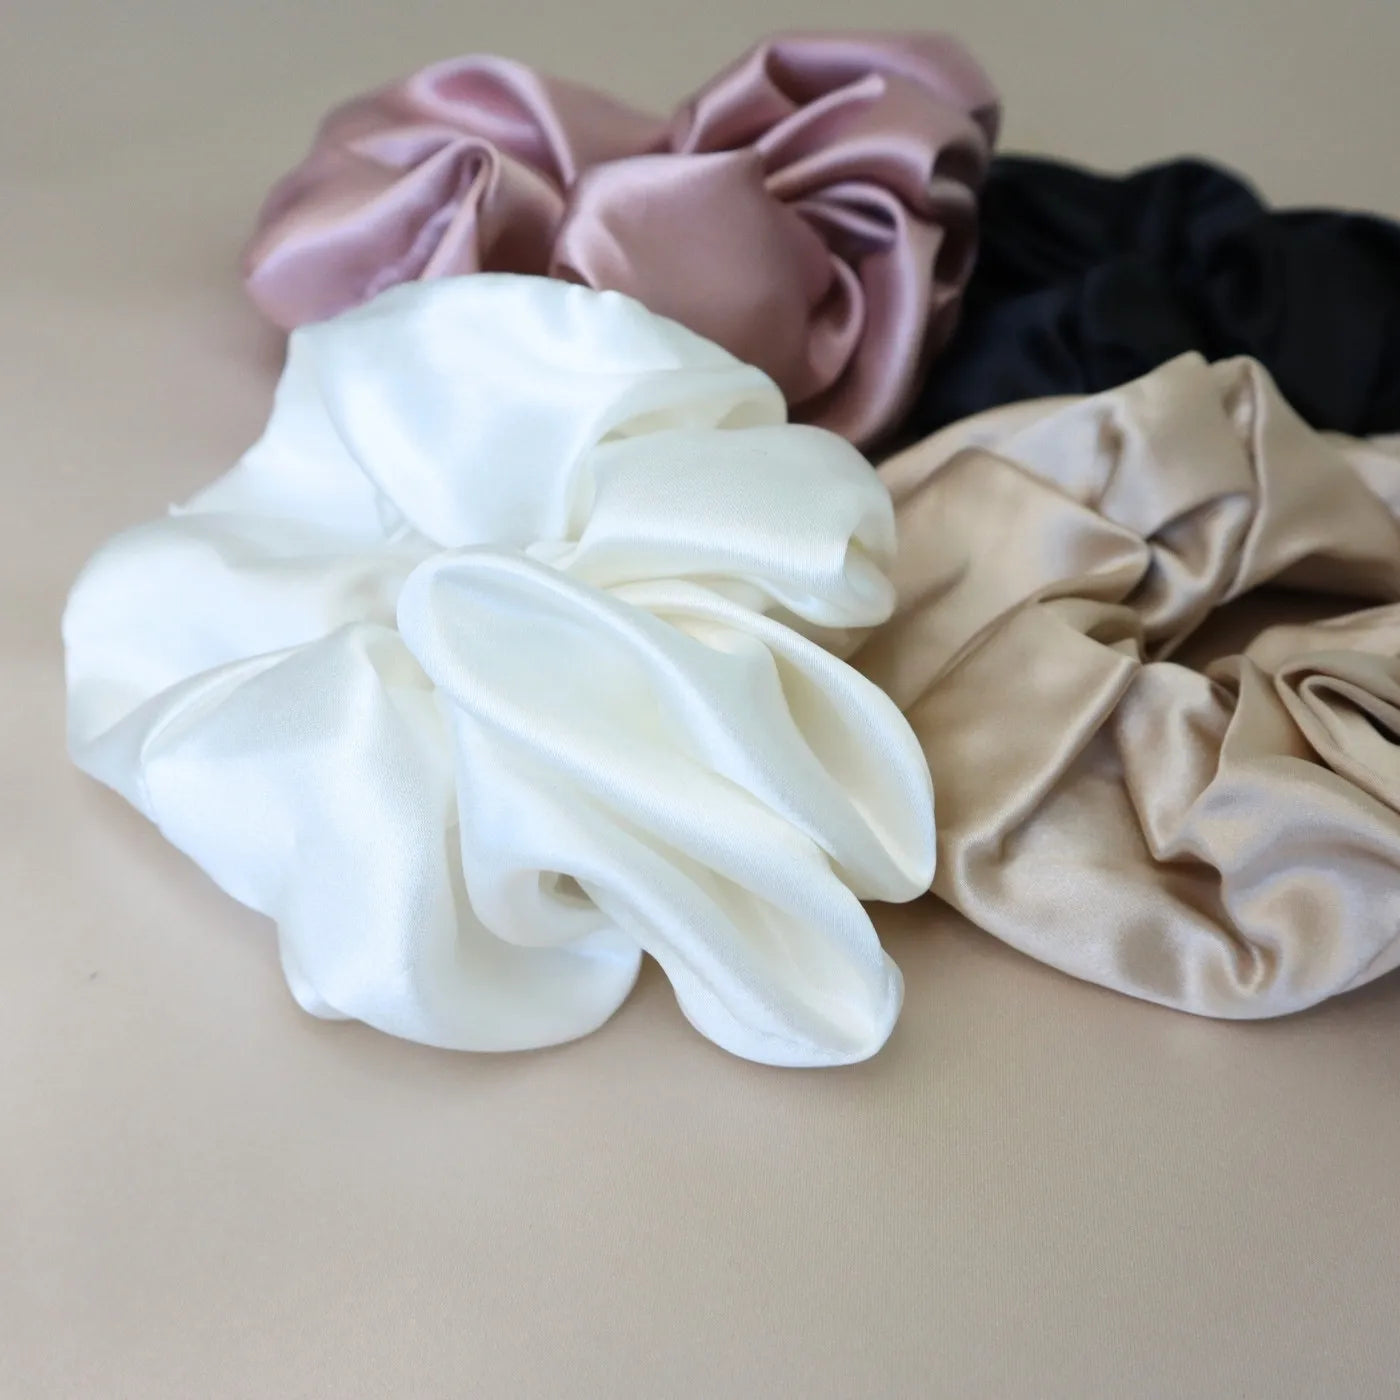 4 Silk Hair Scrunchie Set - White, Gold, Black, Pink